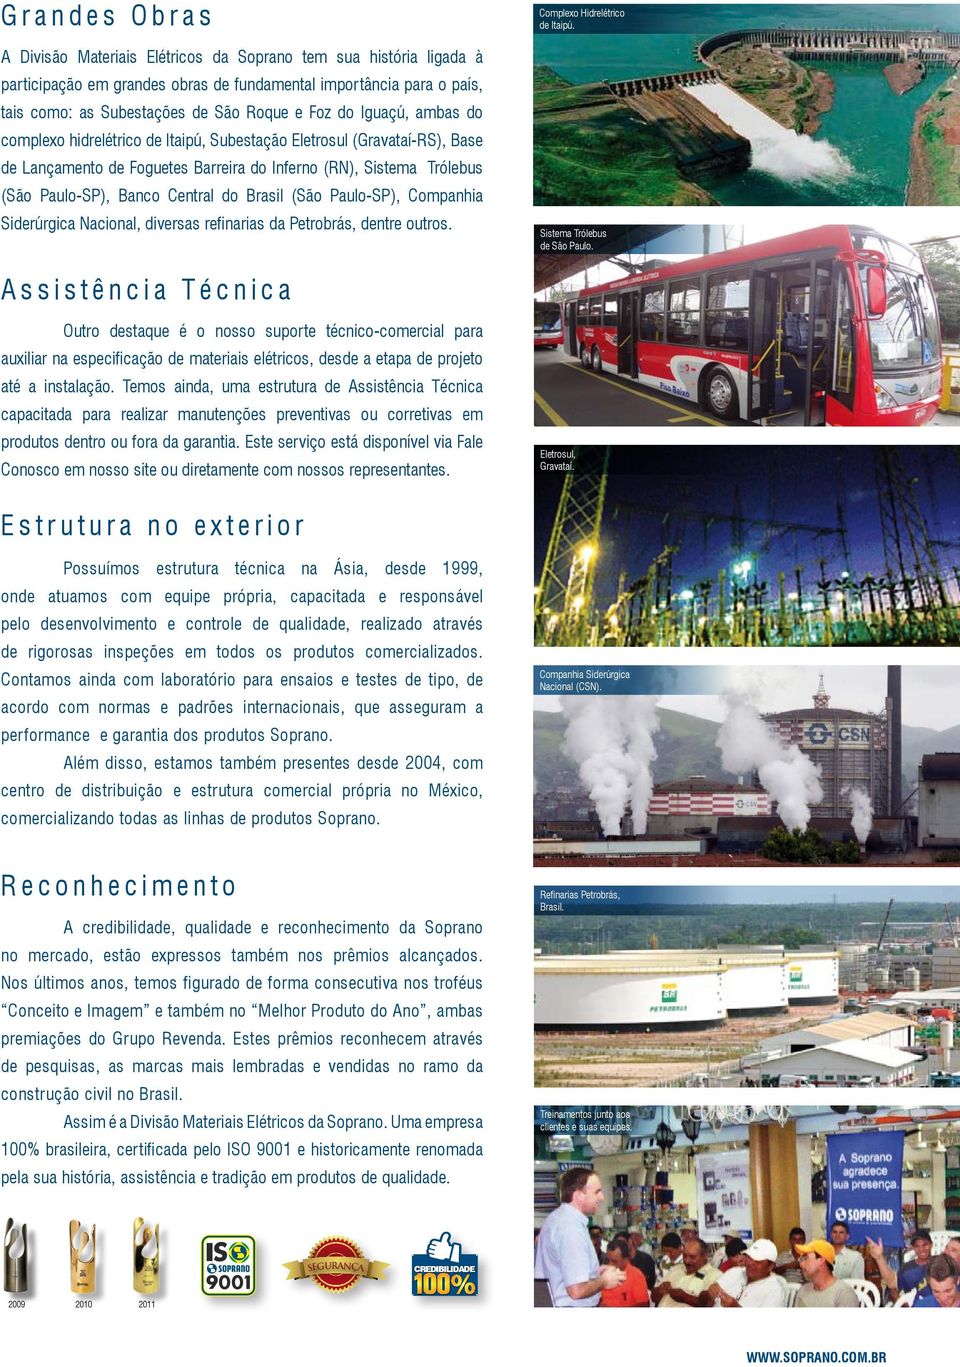 (São Paulo-SP), Companhia Siderúrgica Nacional, diversas refinarias da Petrobrás, dentre outros. Complexo Hidrelétrico de Itaipú. Sistema Trólebus de São Paulo.